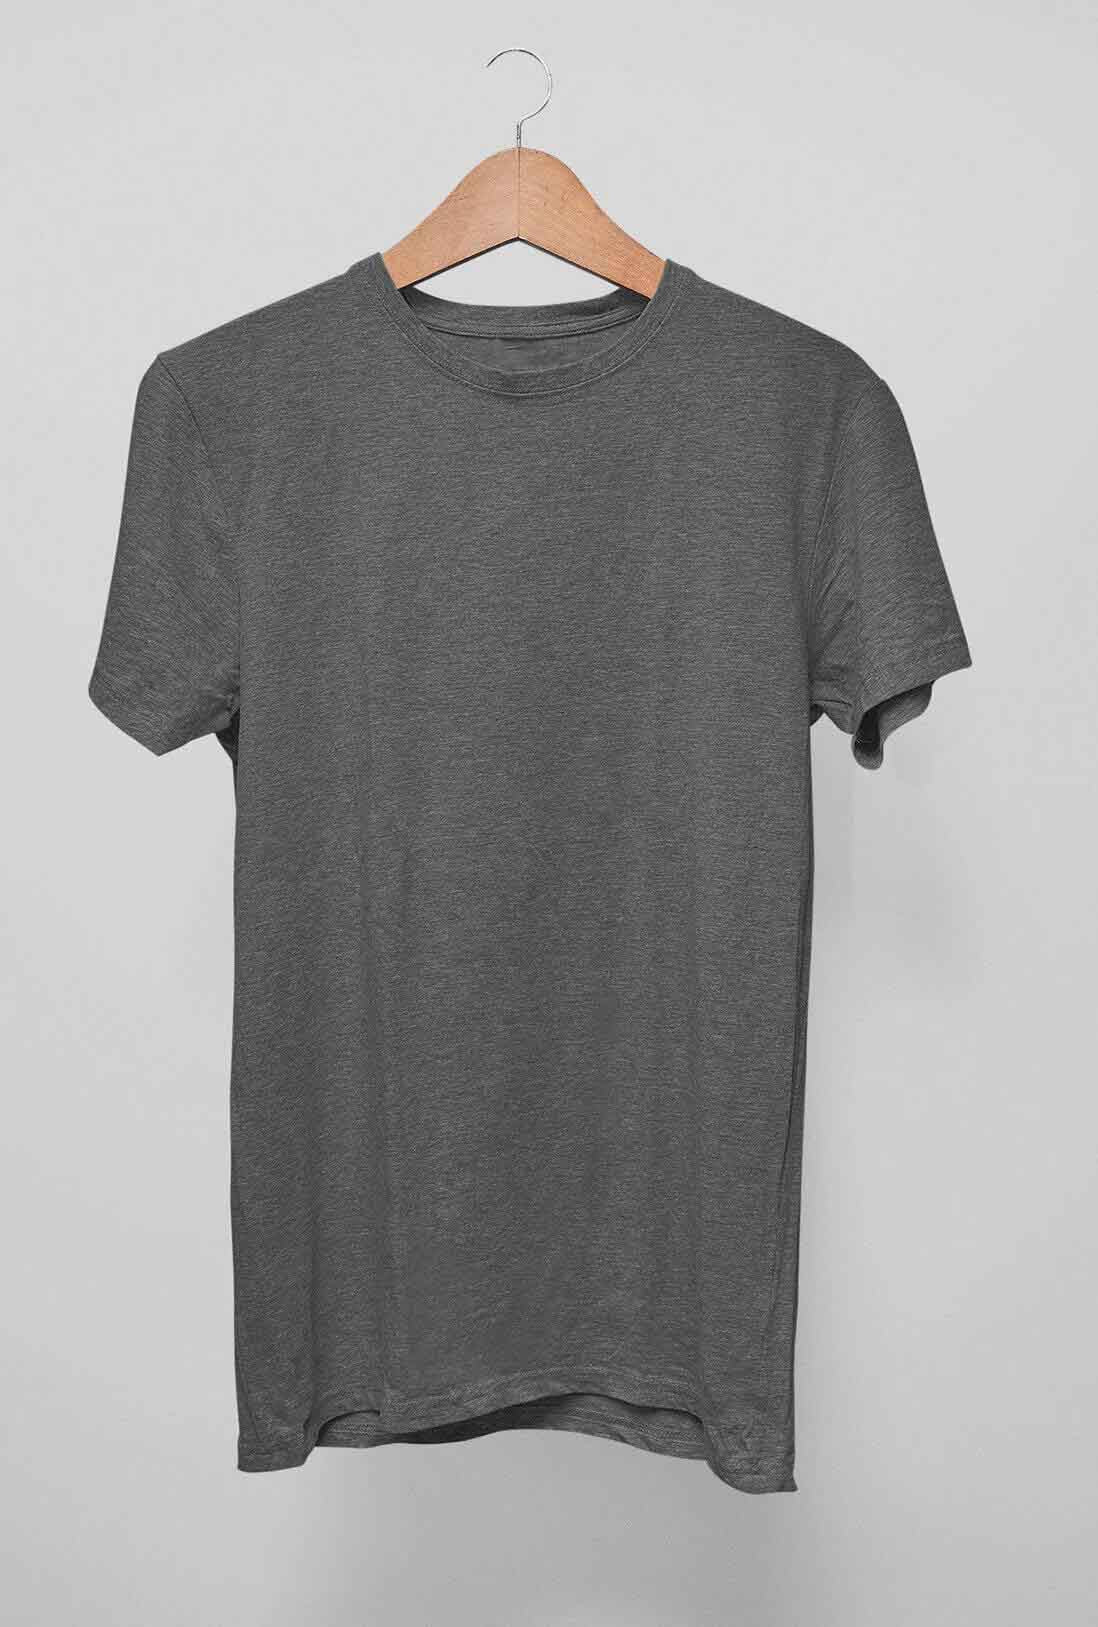 Men's Peppercorn Grey Cotton T-Shirt